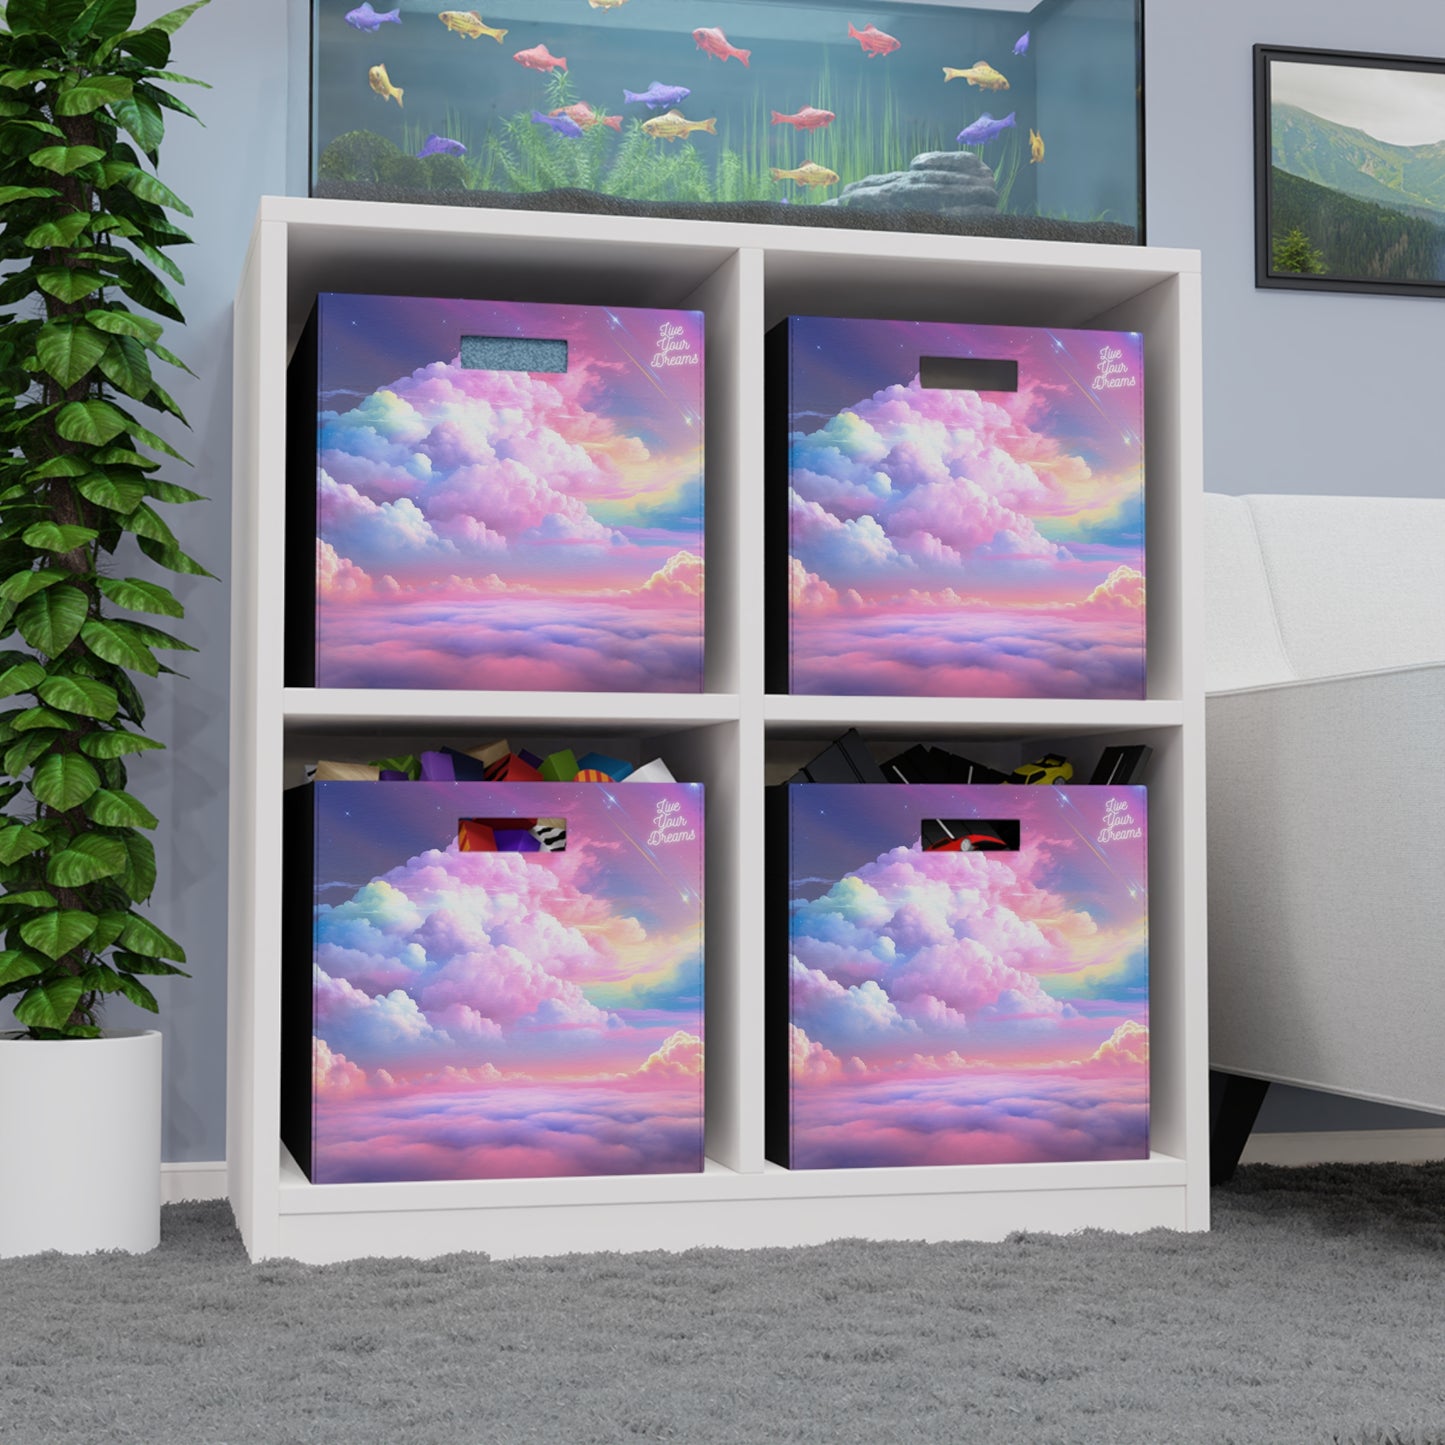 Rainbow Dreams Felt Storage Box From Big Fairy Tales By Schatar